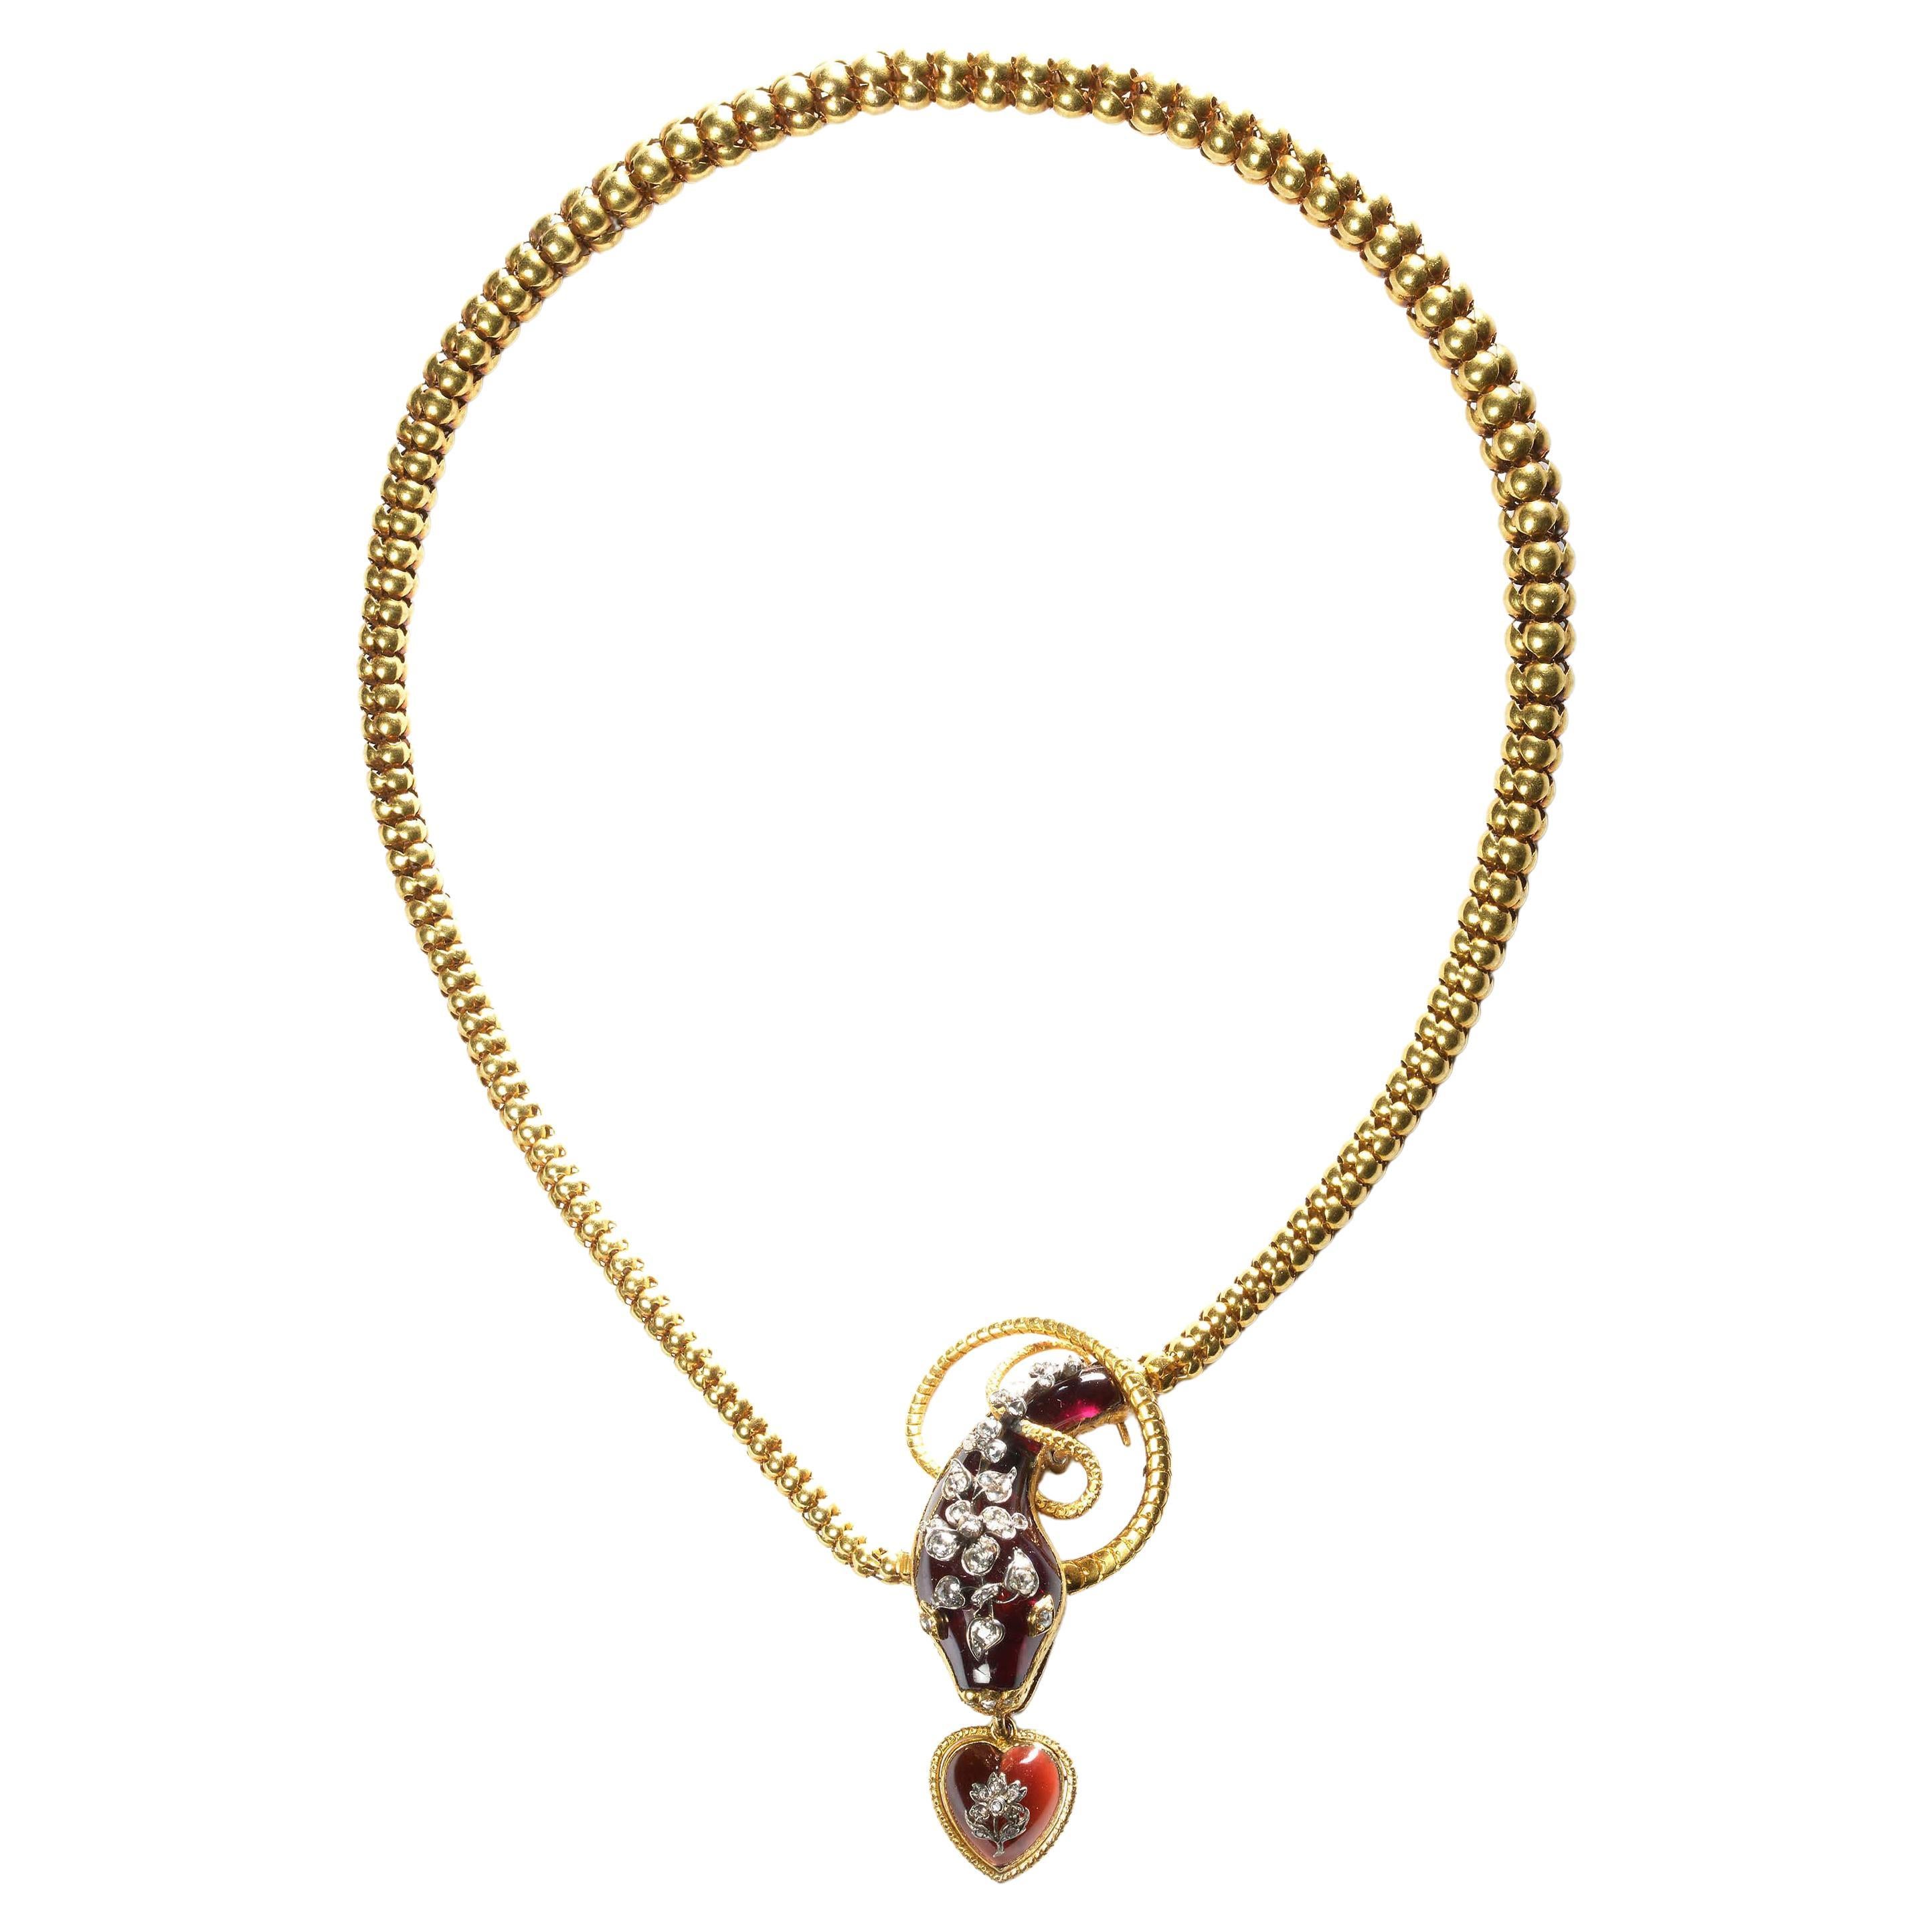 Antique Garnet Diamond and Gold Snake Necklace, Circa 1860